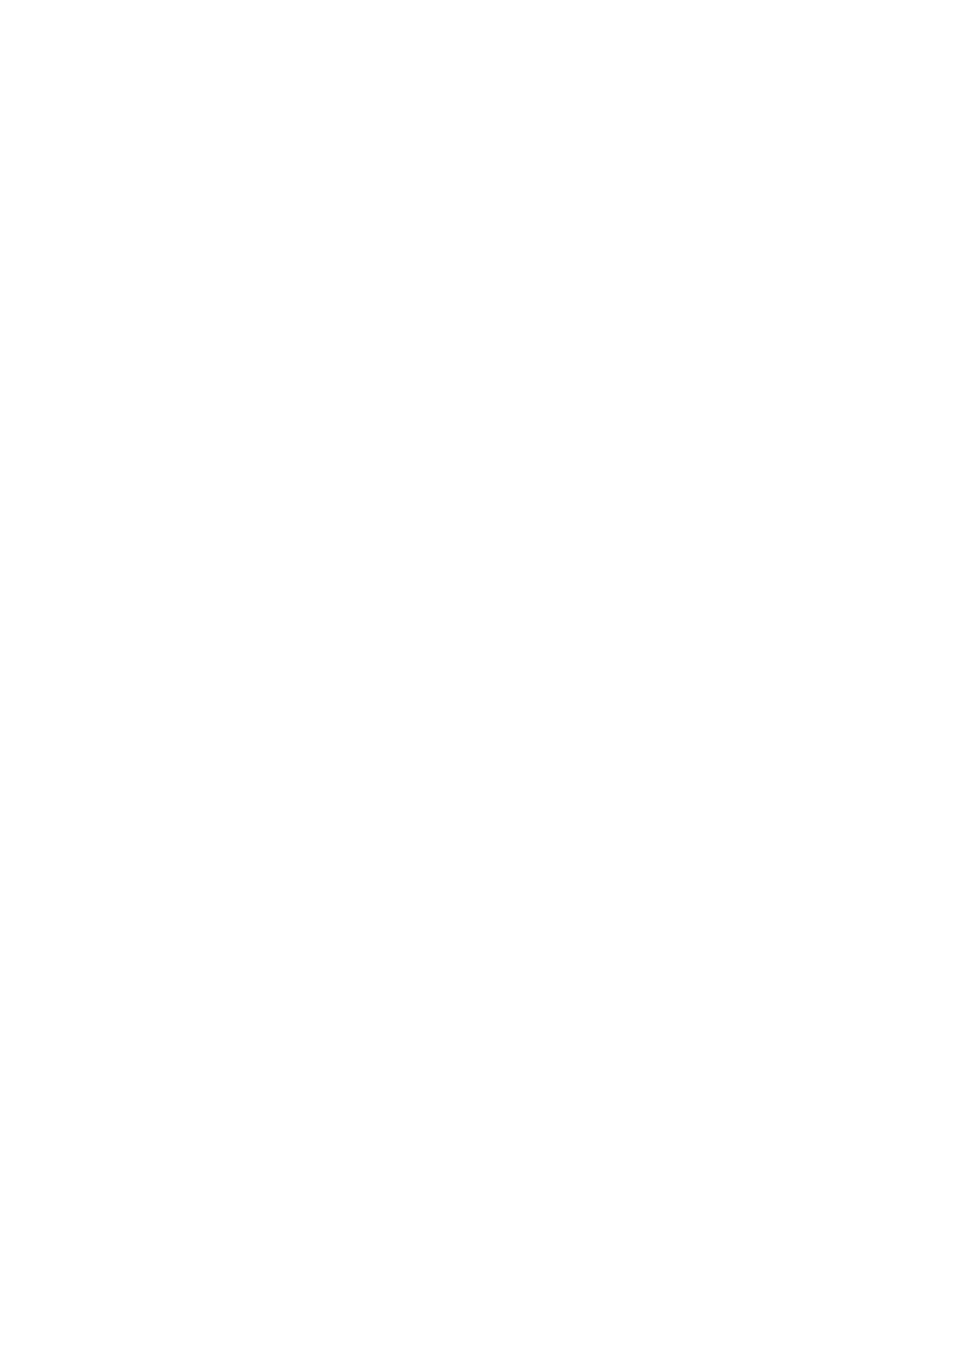 Bases para et desarrollo del control integrado de los pulgones (Hom., Aphididae) de los cultivos de la Provincia de León. Servicio de Publicaciones. Universidad de León. 341 págs. STARY, P.5 G.